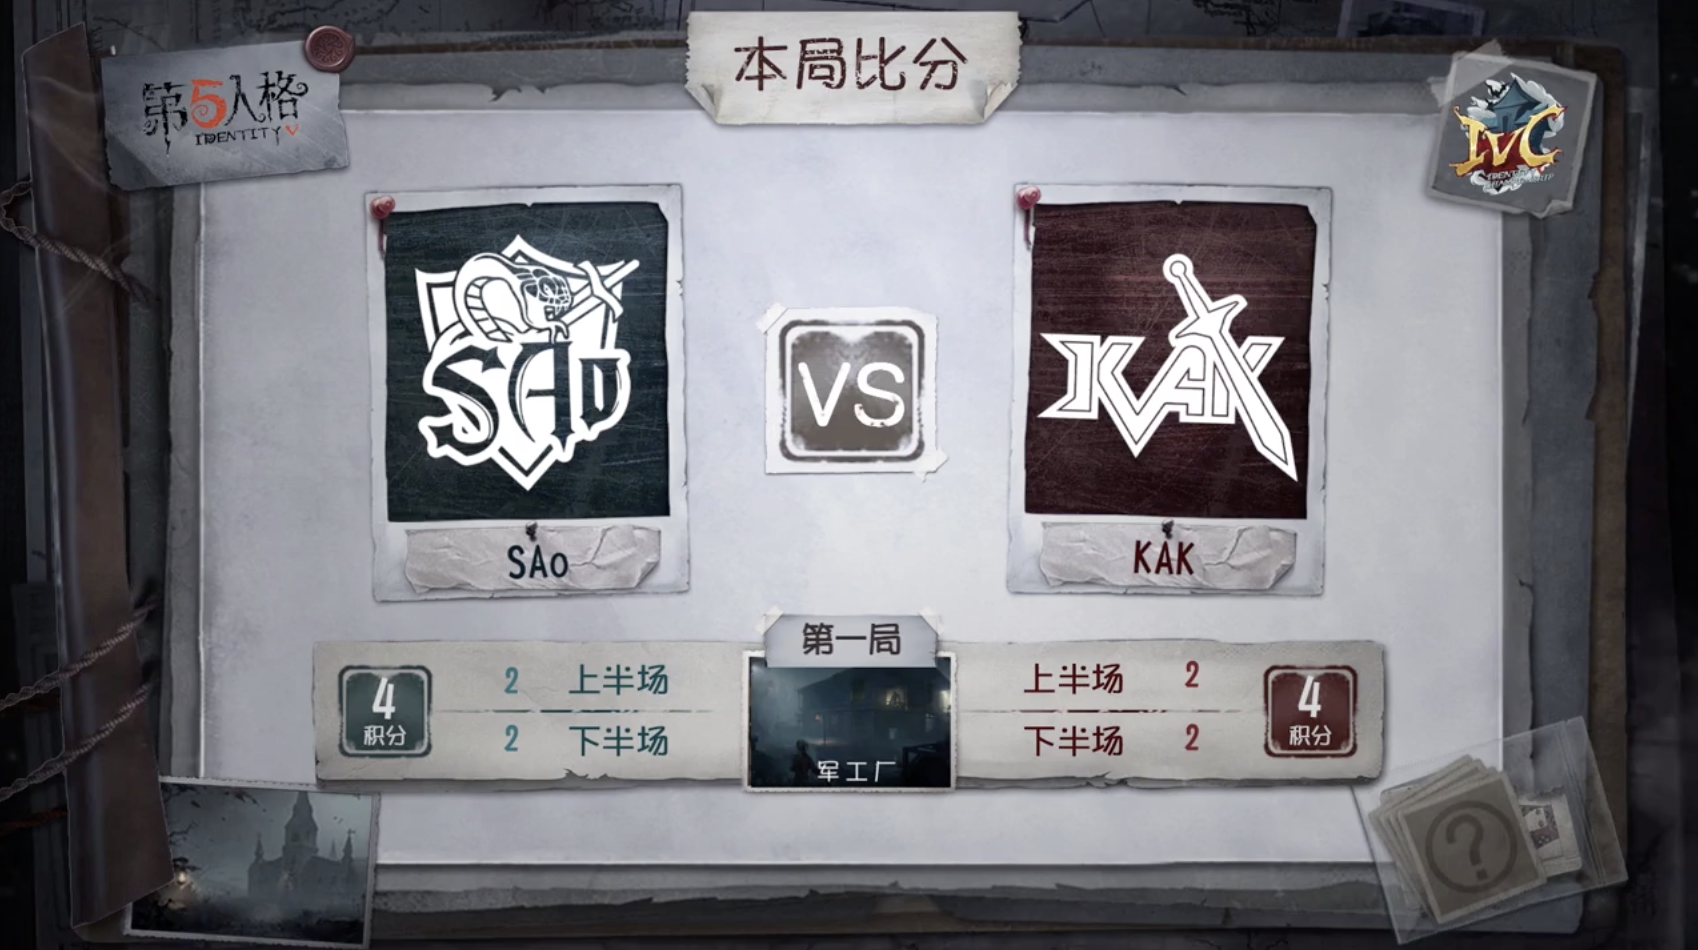 10月25日 KAK vs SAo小组赛BO3第一局